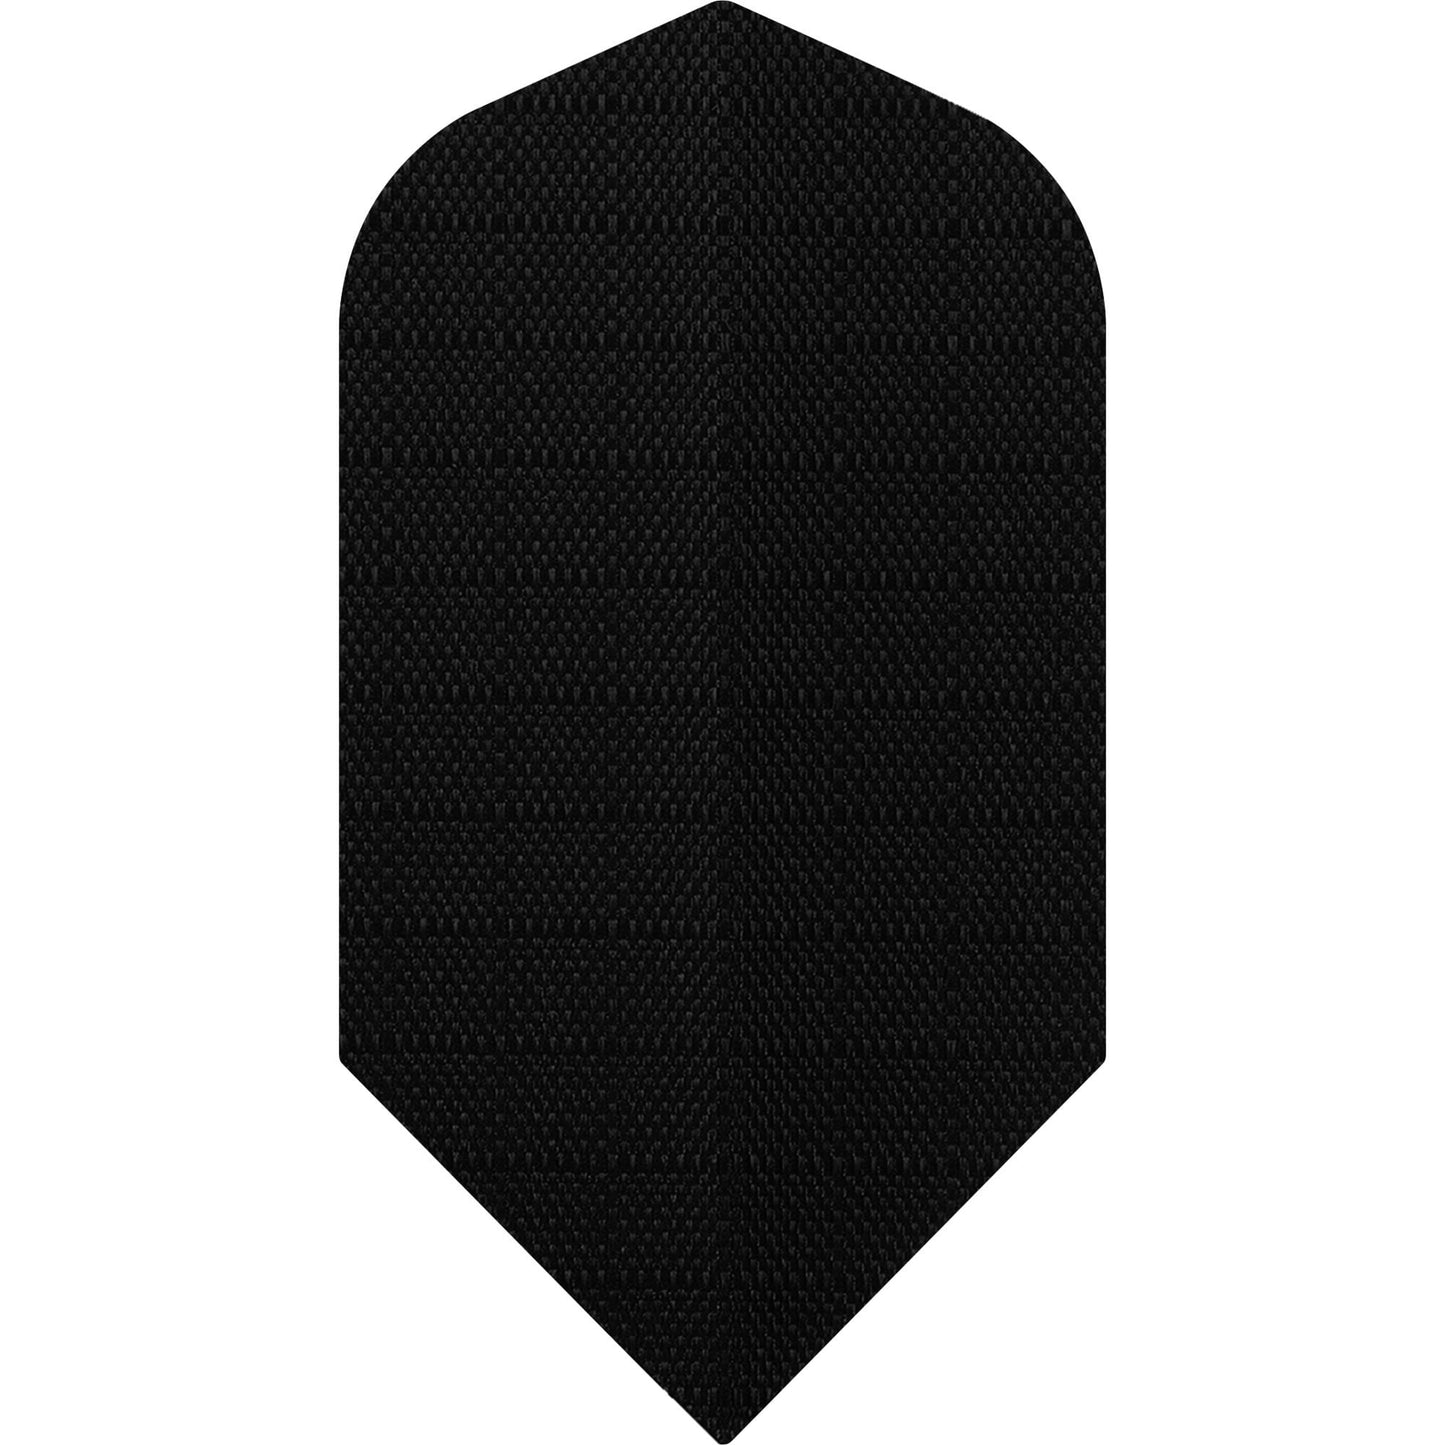 *Designa Dart Flights - Fabric Rip Stop Nylon - Longlife - Slim Black